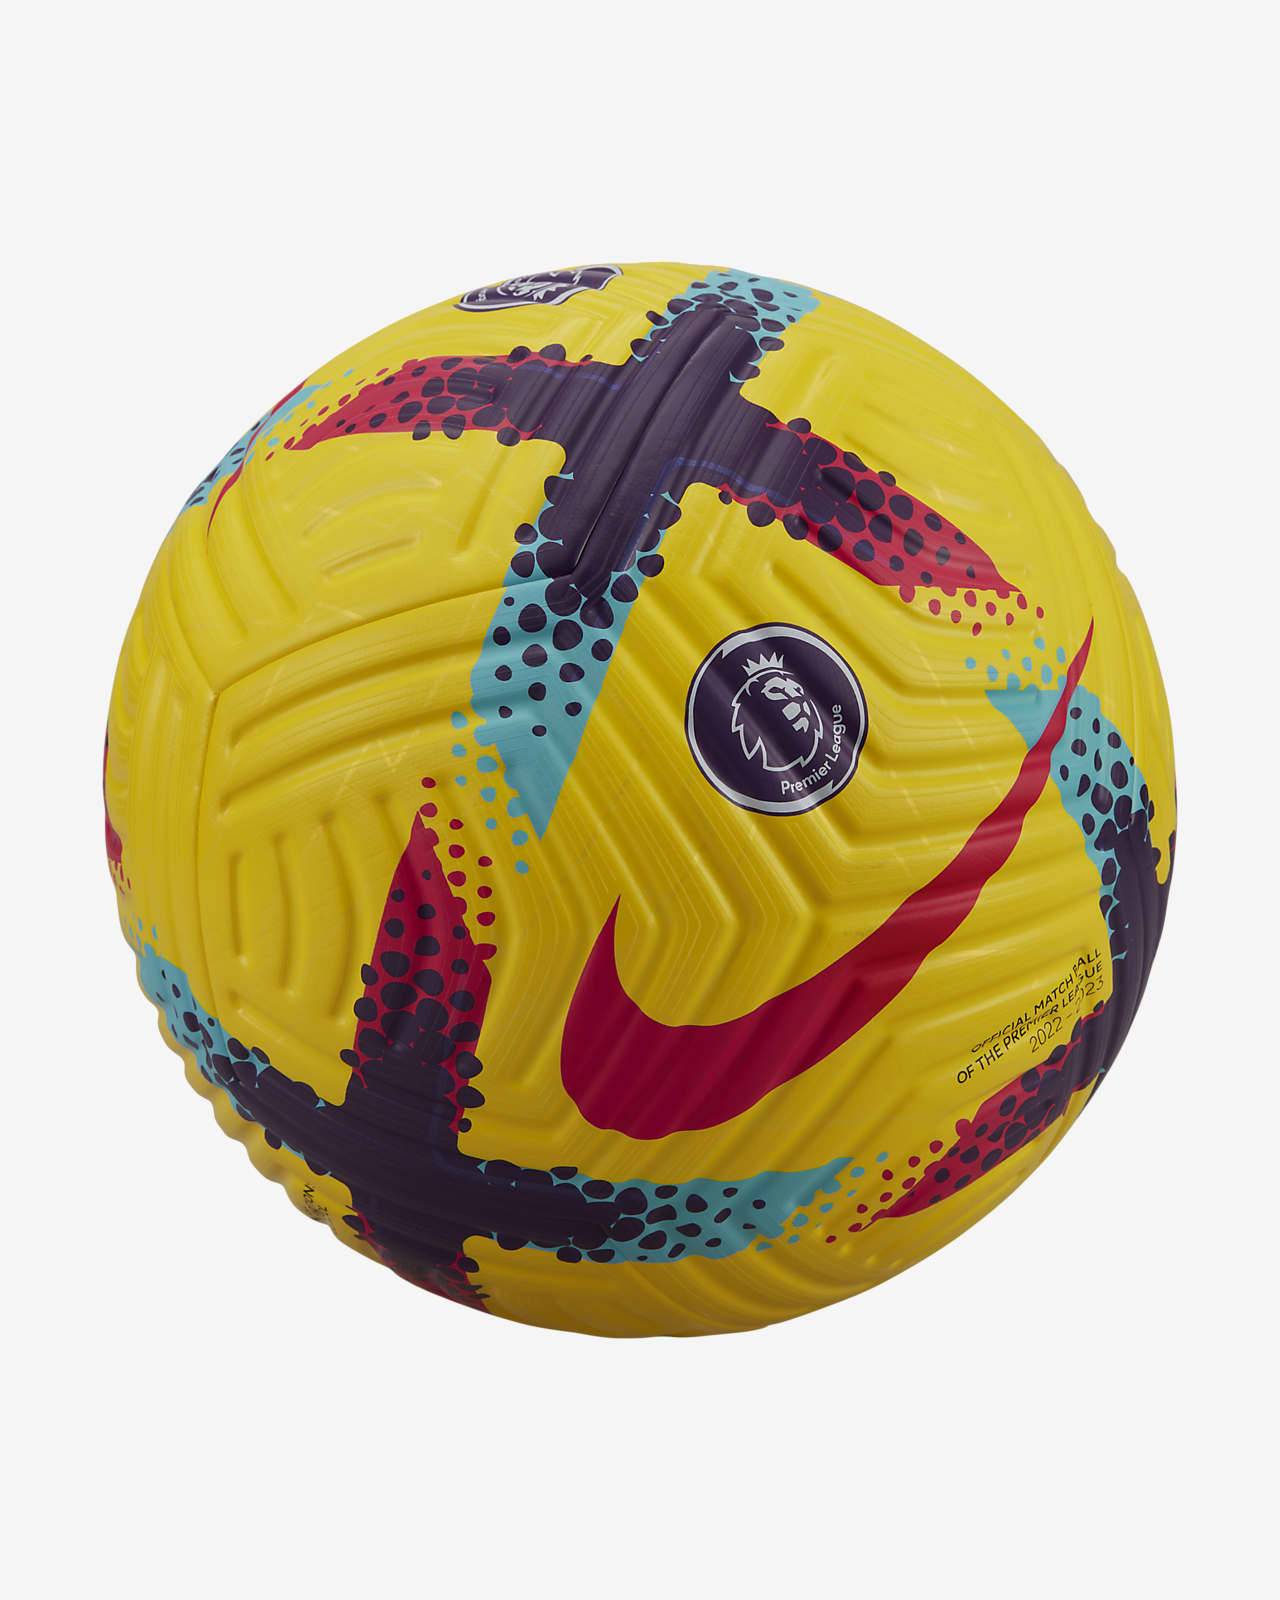 Premier League Flight Balón de fútbol.